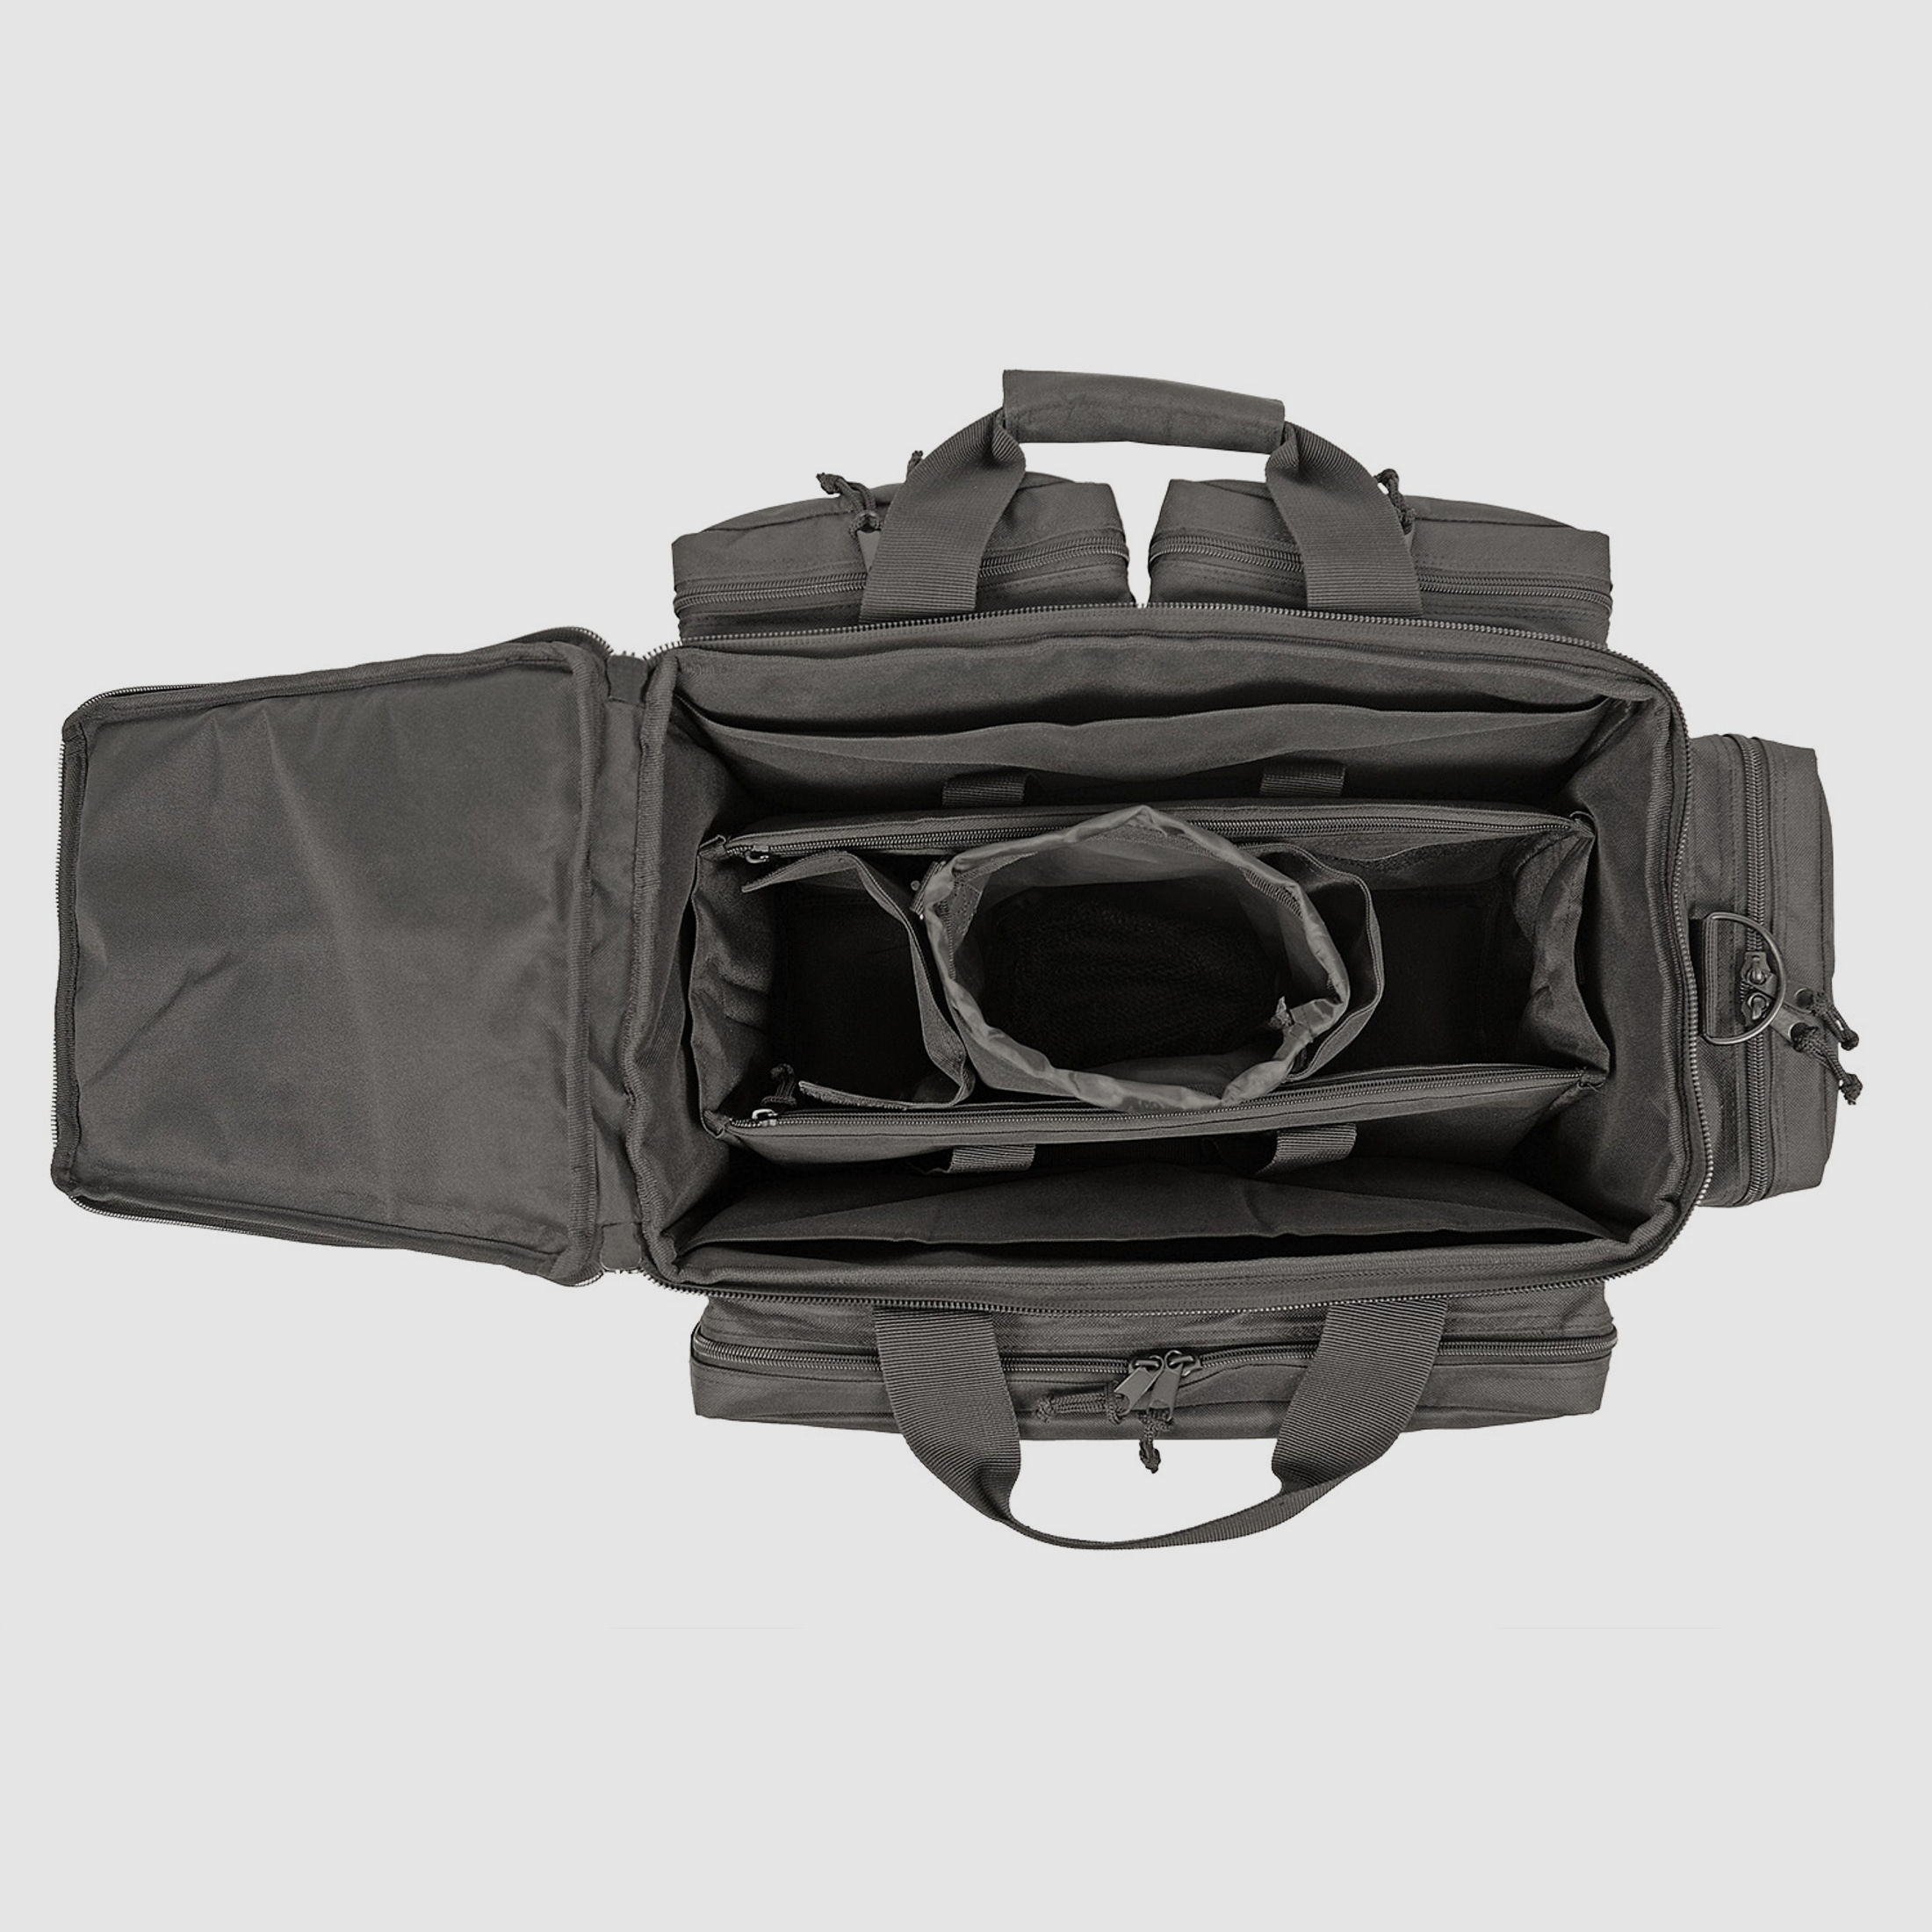 ahg-Anschütz Range Bag für Kurzwaffen und Zubehör (schwarz)